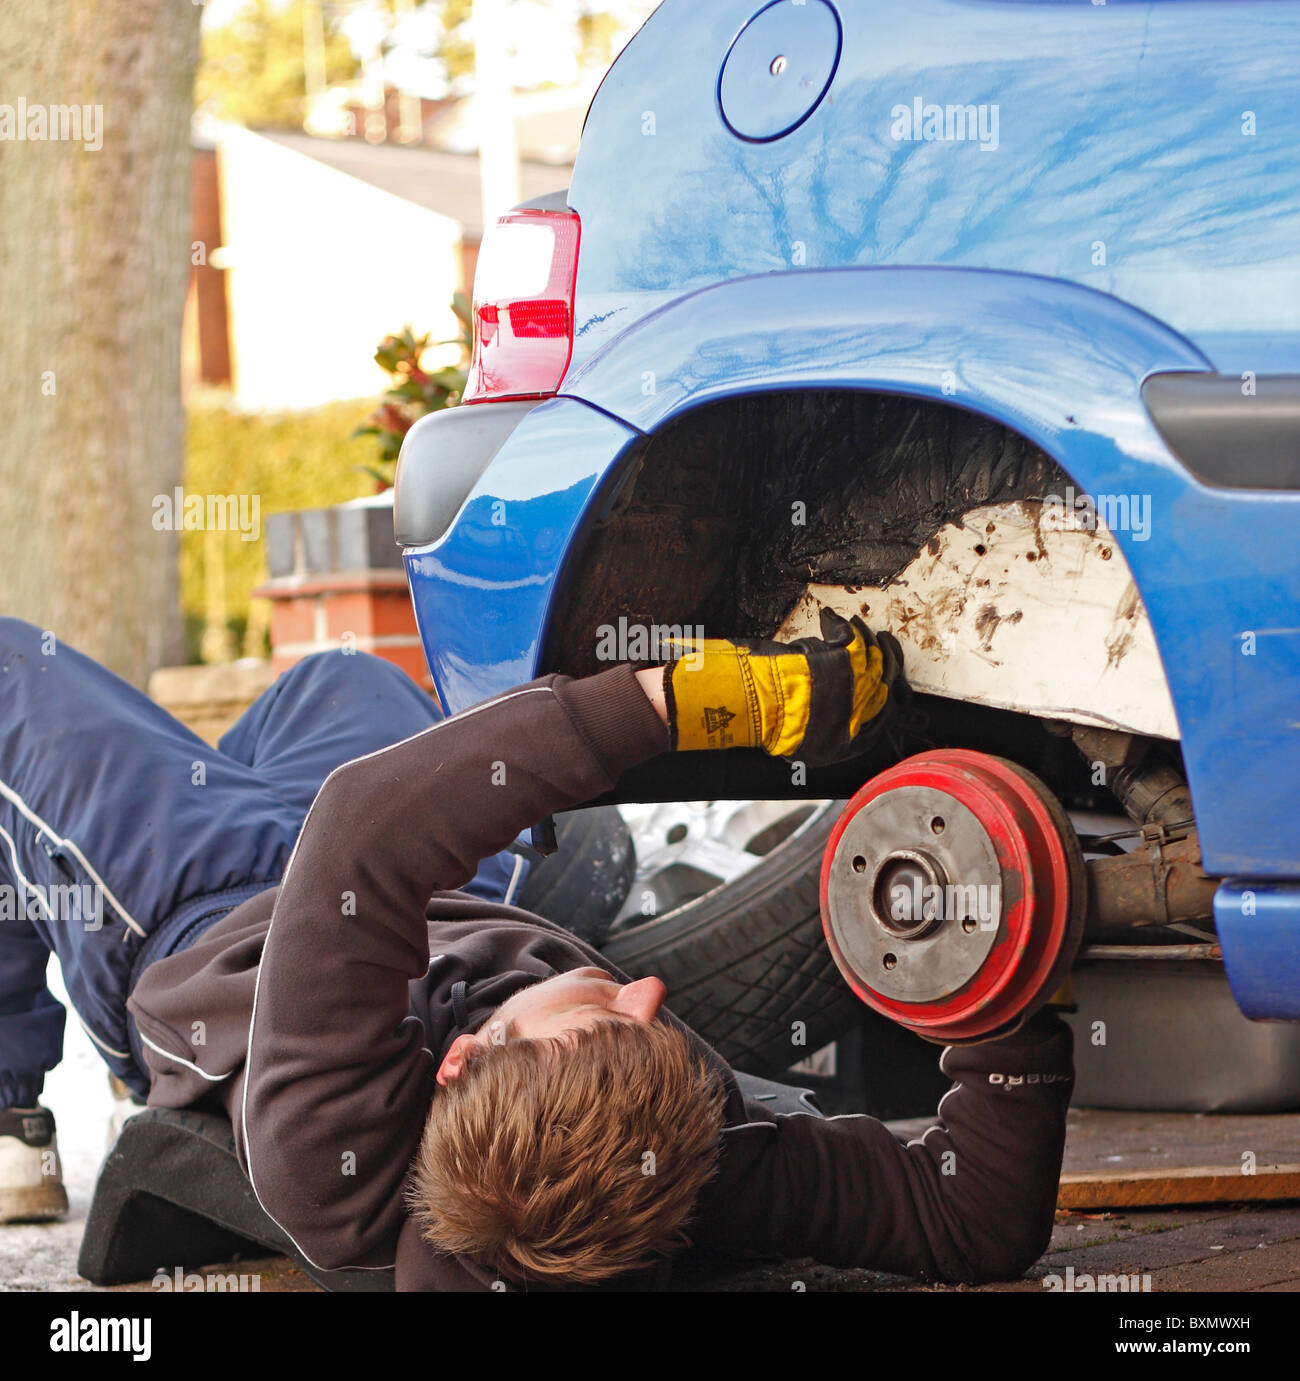 Ein Teenager männlich arbeiten unter einem Auto Reparatur Chassis/Radlauf. Rad entfernt und Auto aufgebockt. Stockfoto